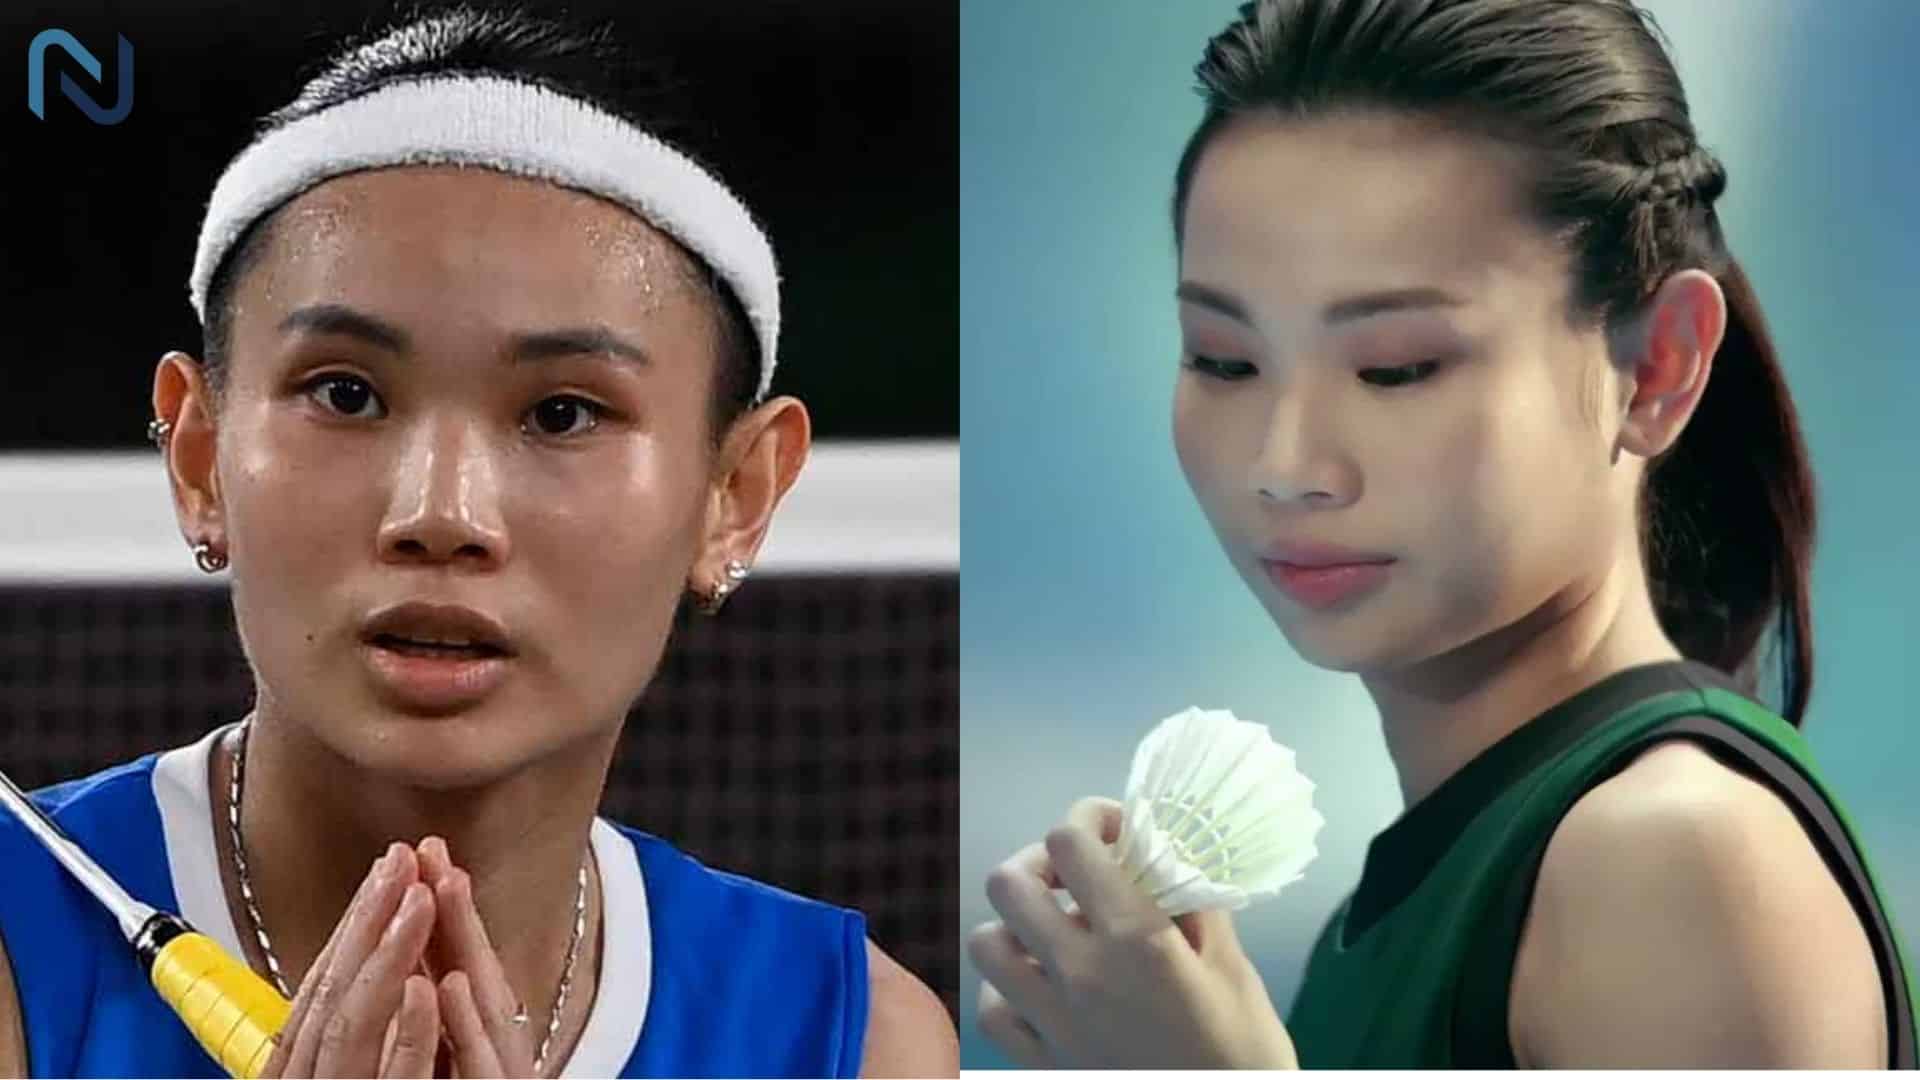 TAI TZU YING Hottest Female Badminton Player